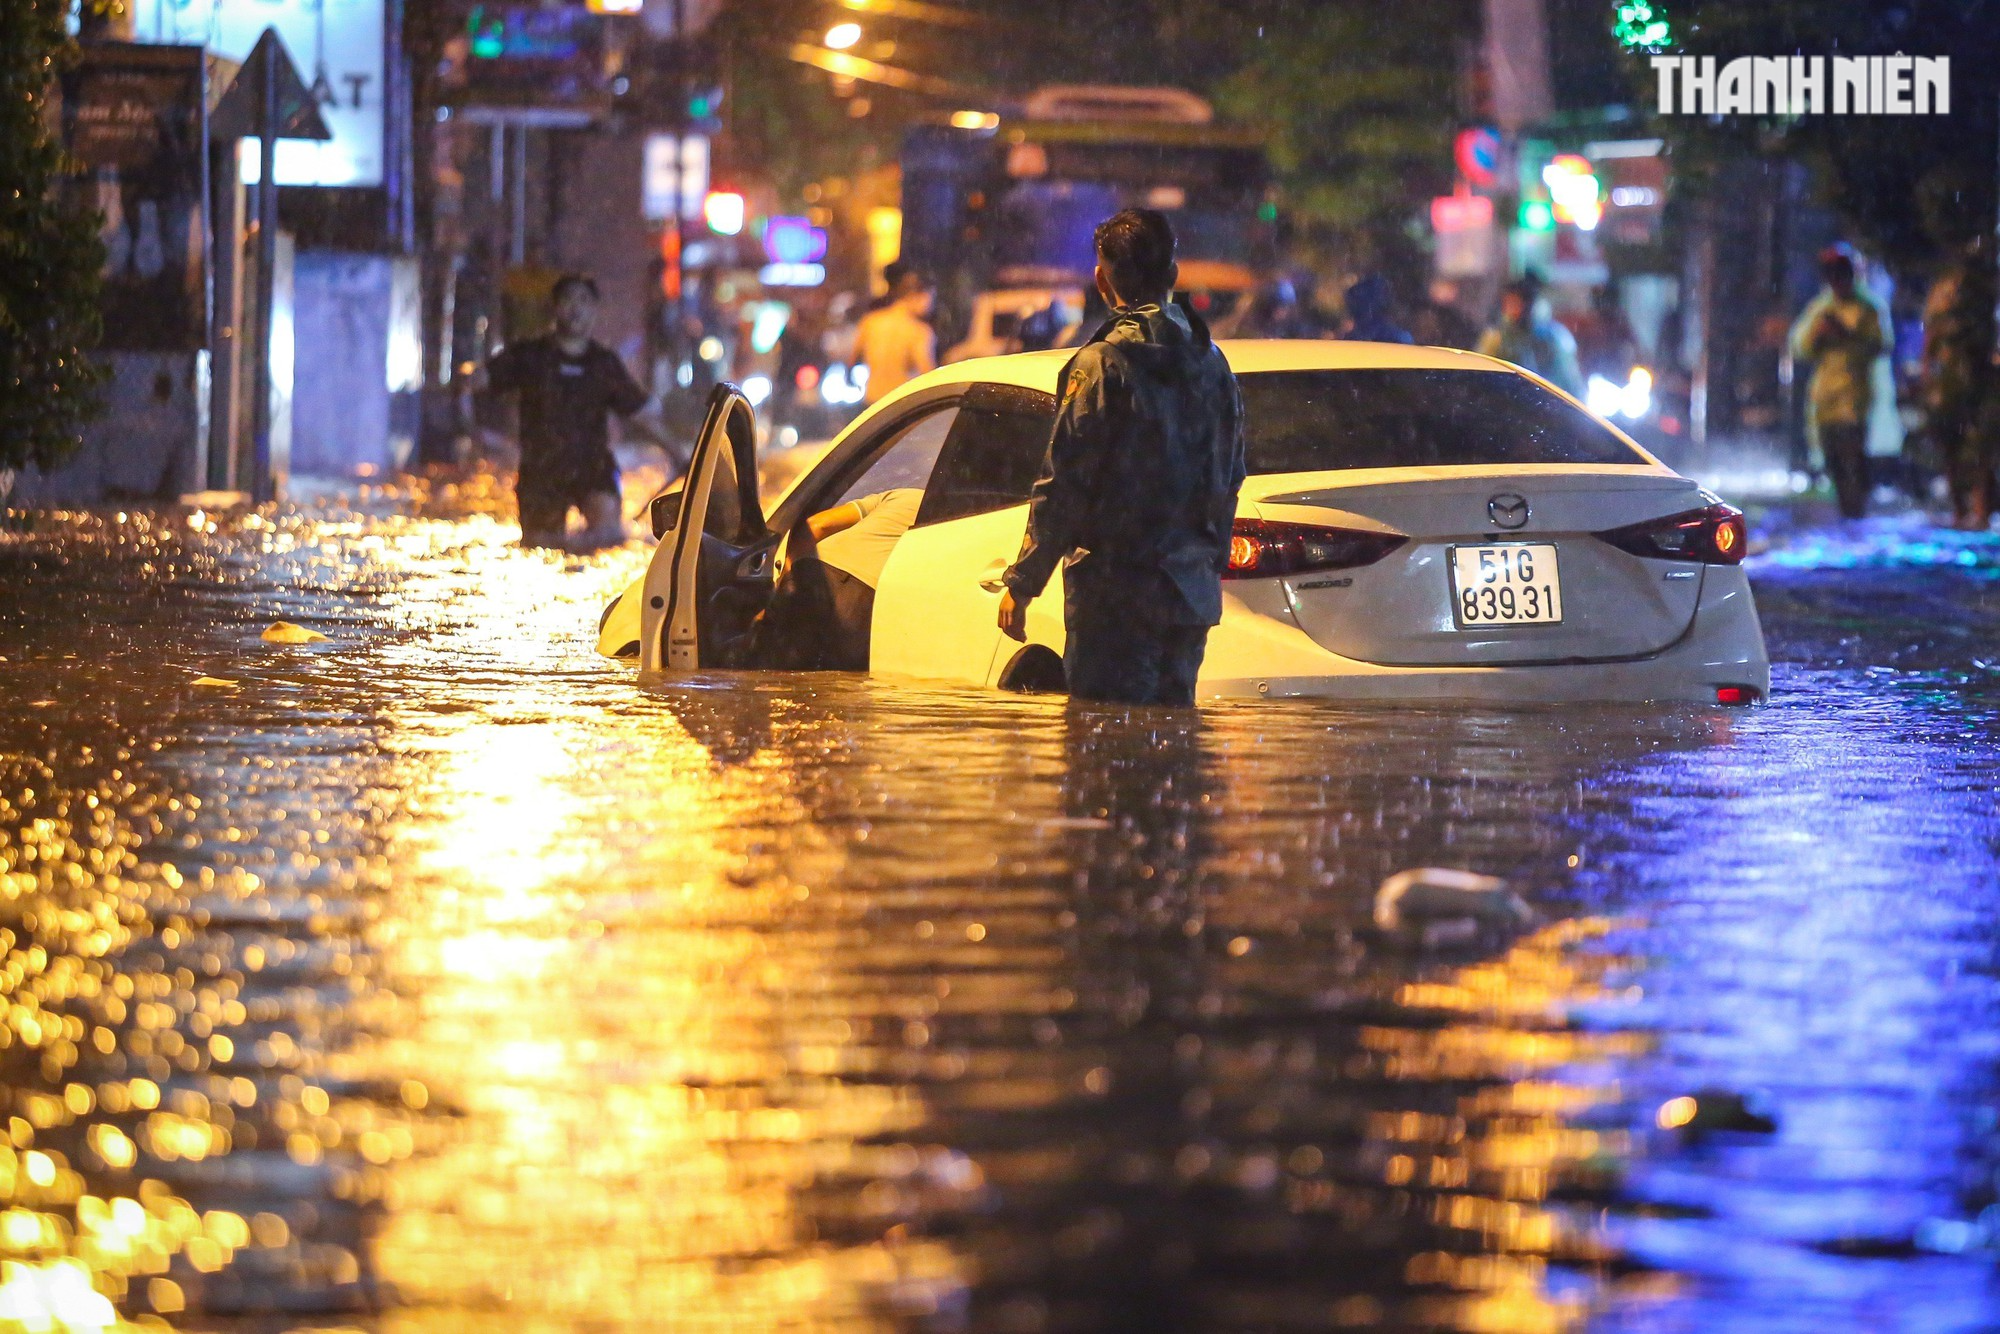 TP.HCM mưa lớn tối nay: Nước dâng tới yên, có người 'cõng xe' qua đoạn ngập - Ảnh 7.